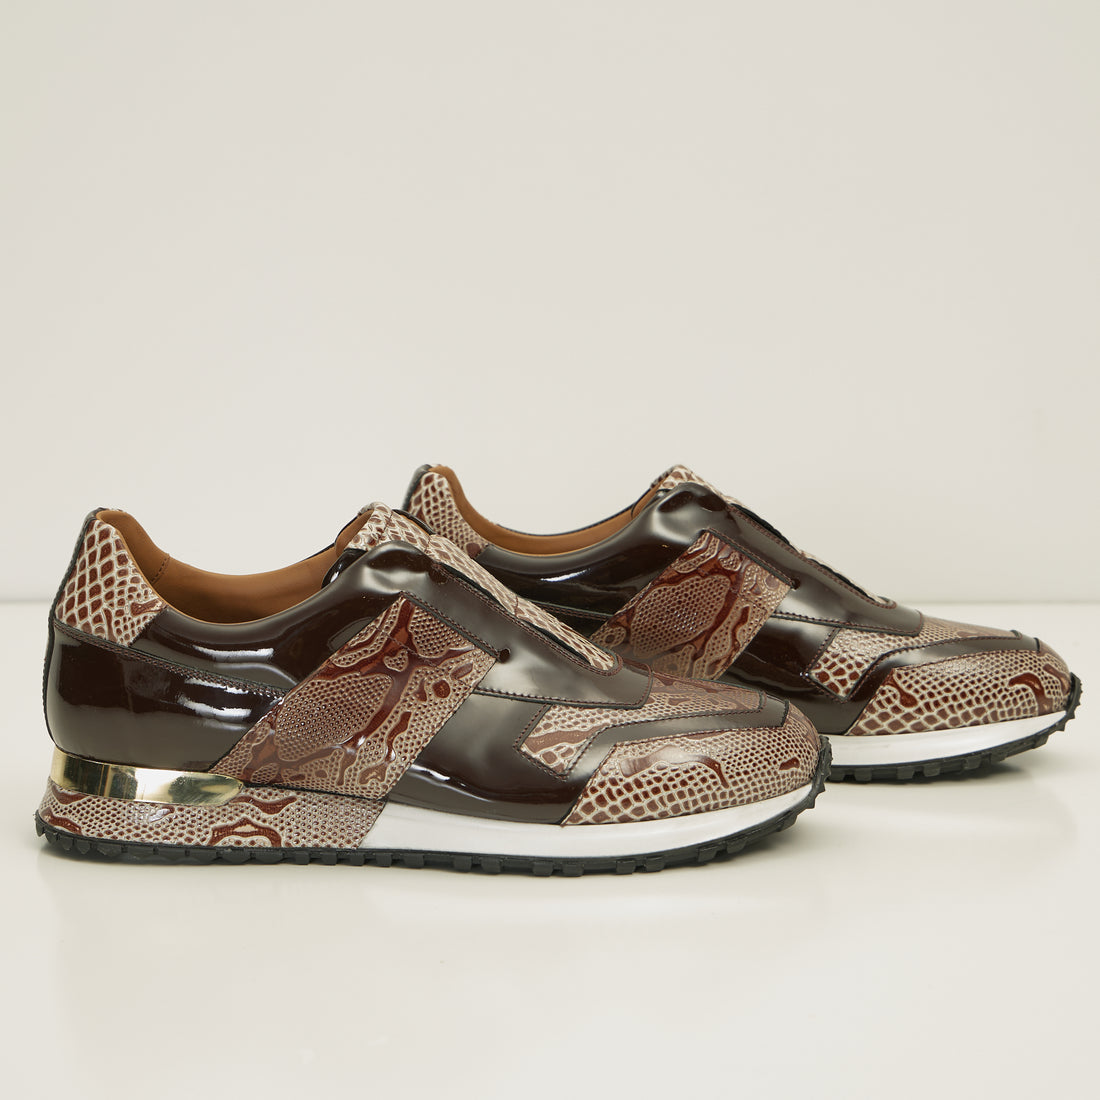 Leather Embossed Snakeskin Sneakers - Brown Beige